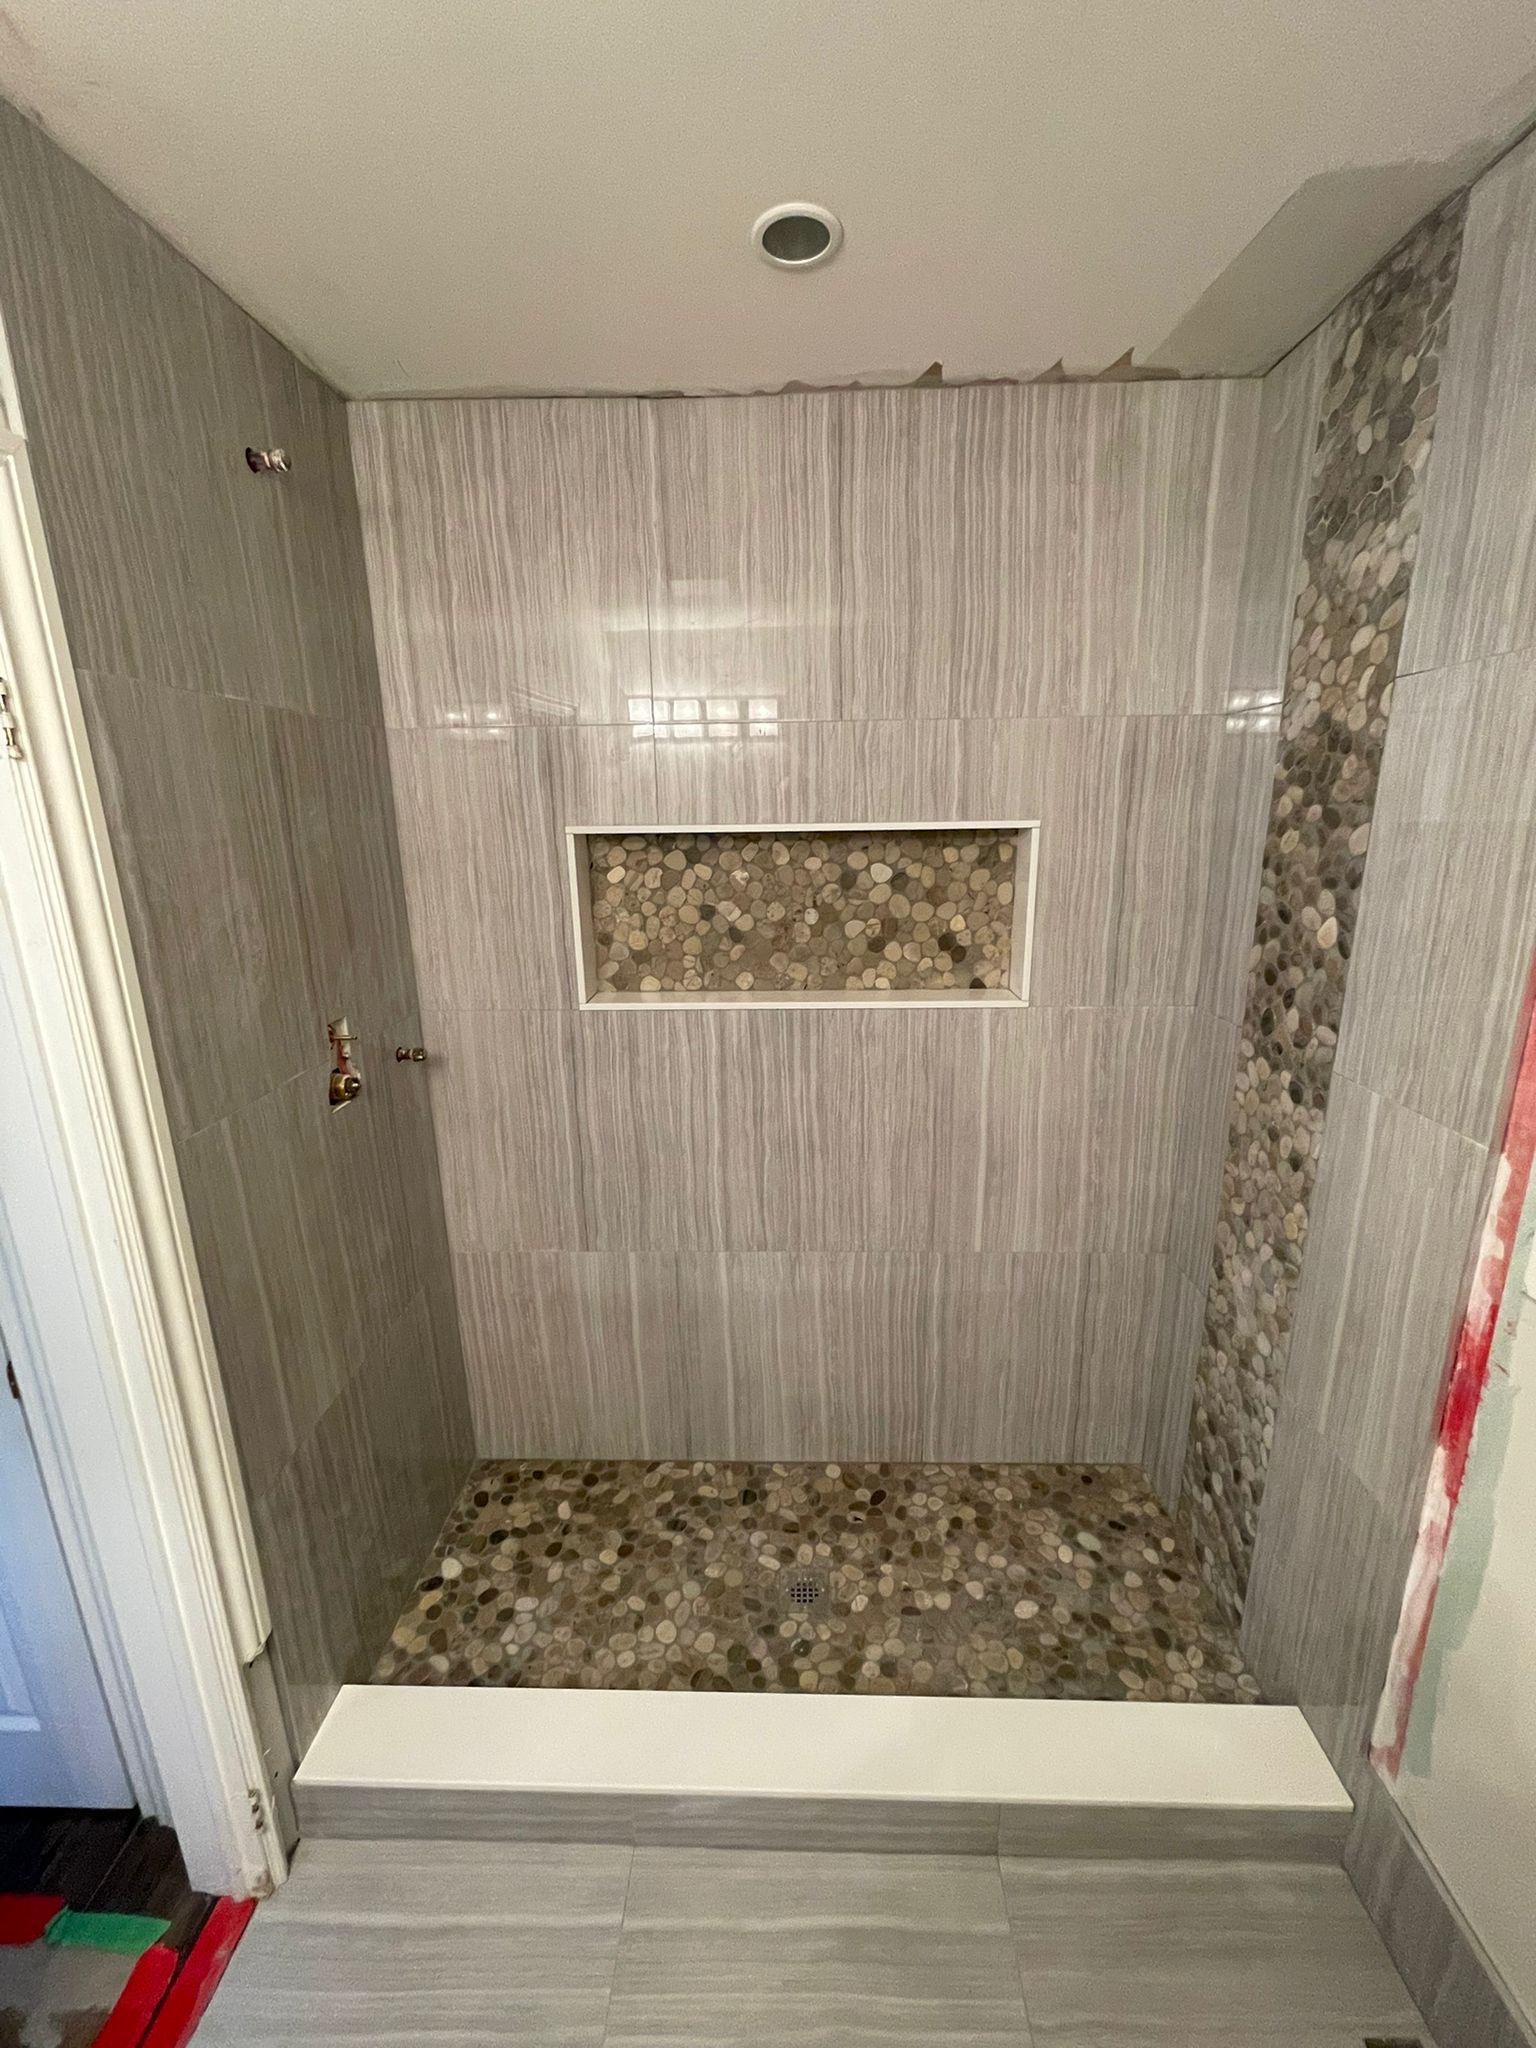  =Bathroom tiles installation Pickering Ontario at Markom Tiles